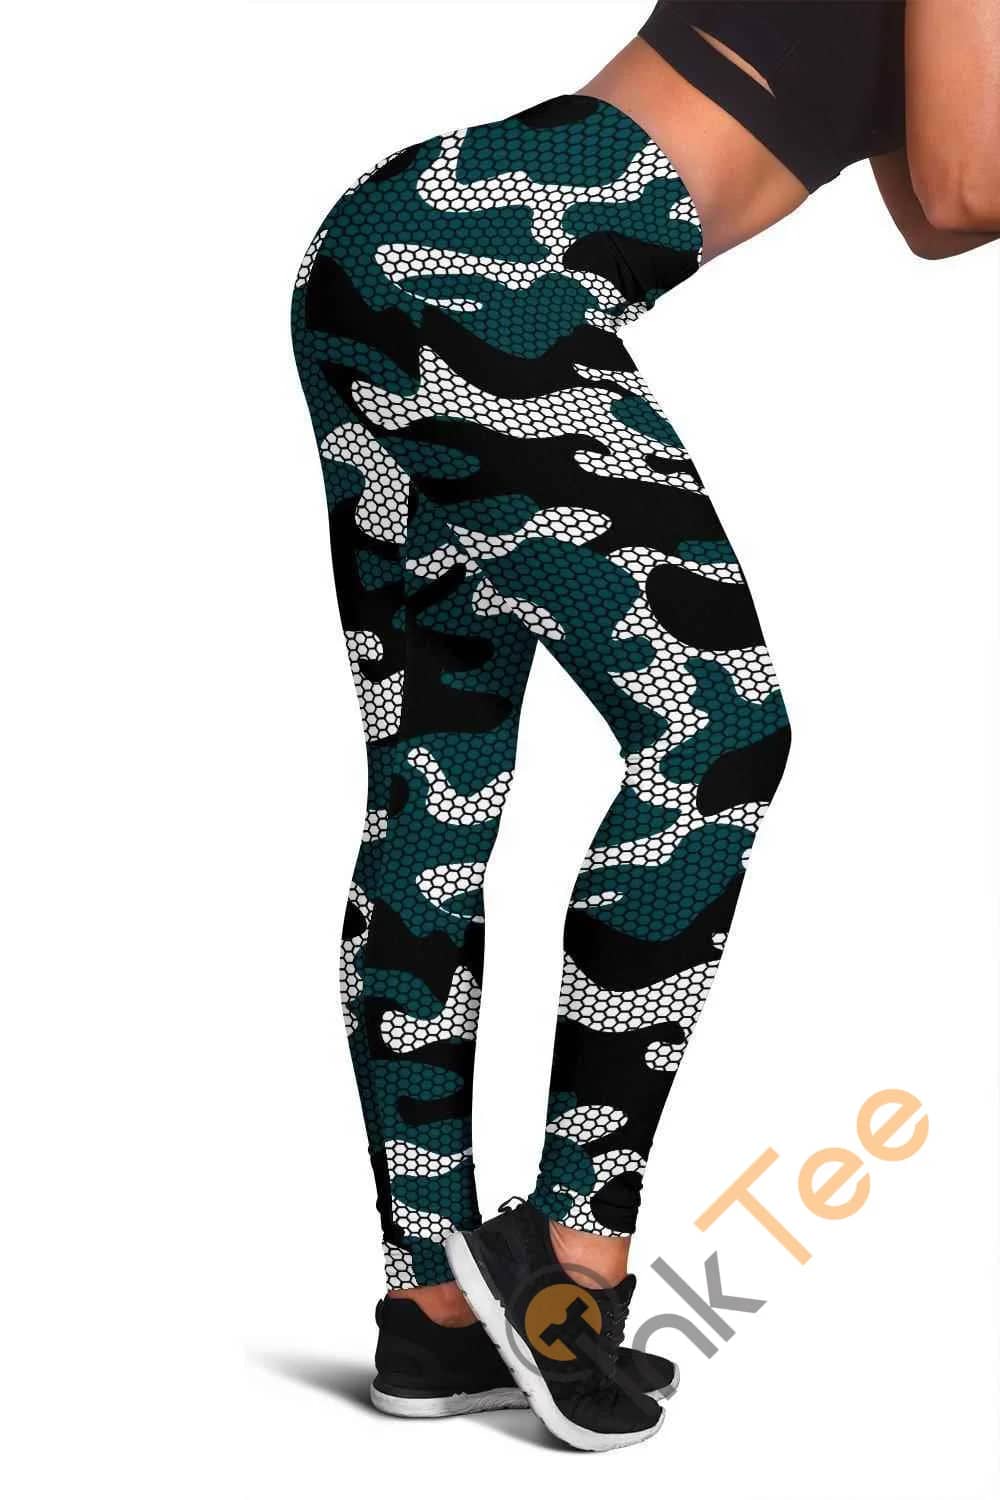 Philadelphia Eagles Inspired Hex Camo 3D All Over Print For Yoga Fitness Fashion Women's Leggings